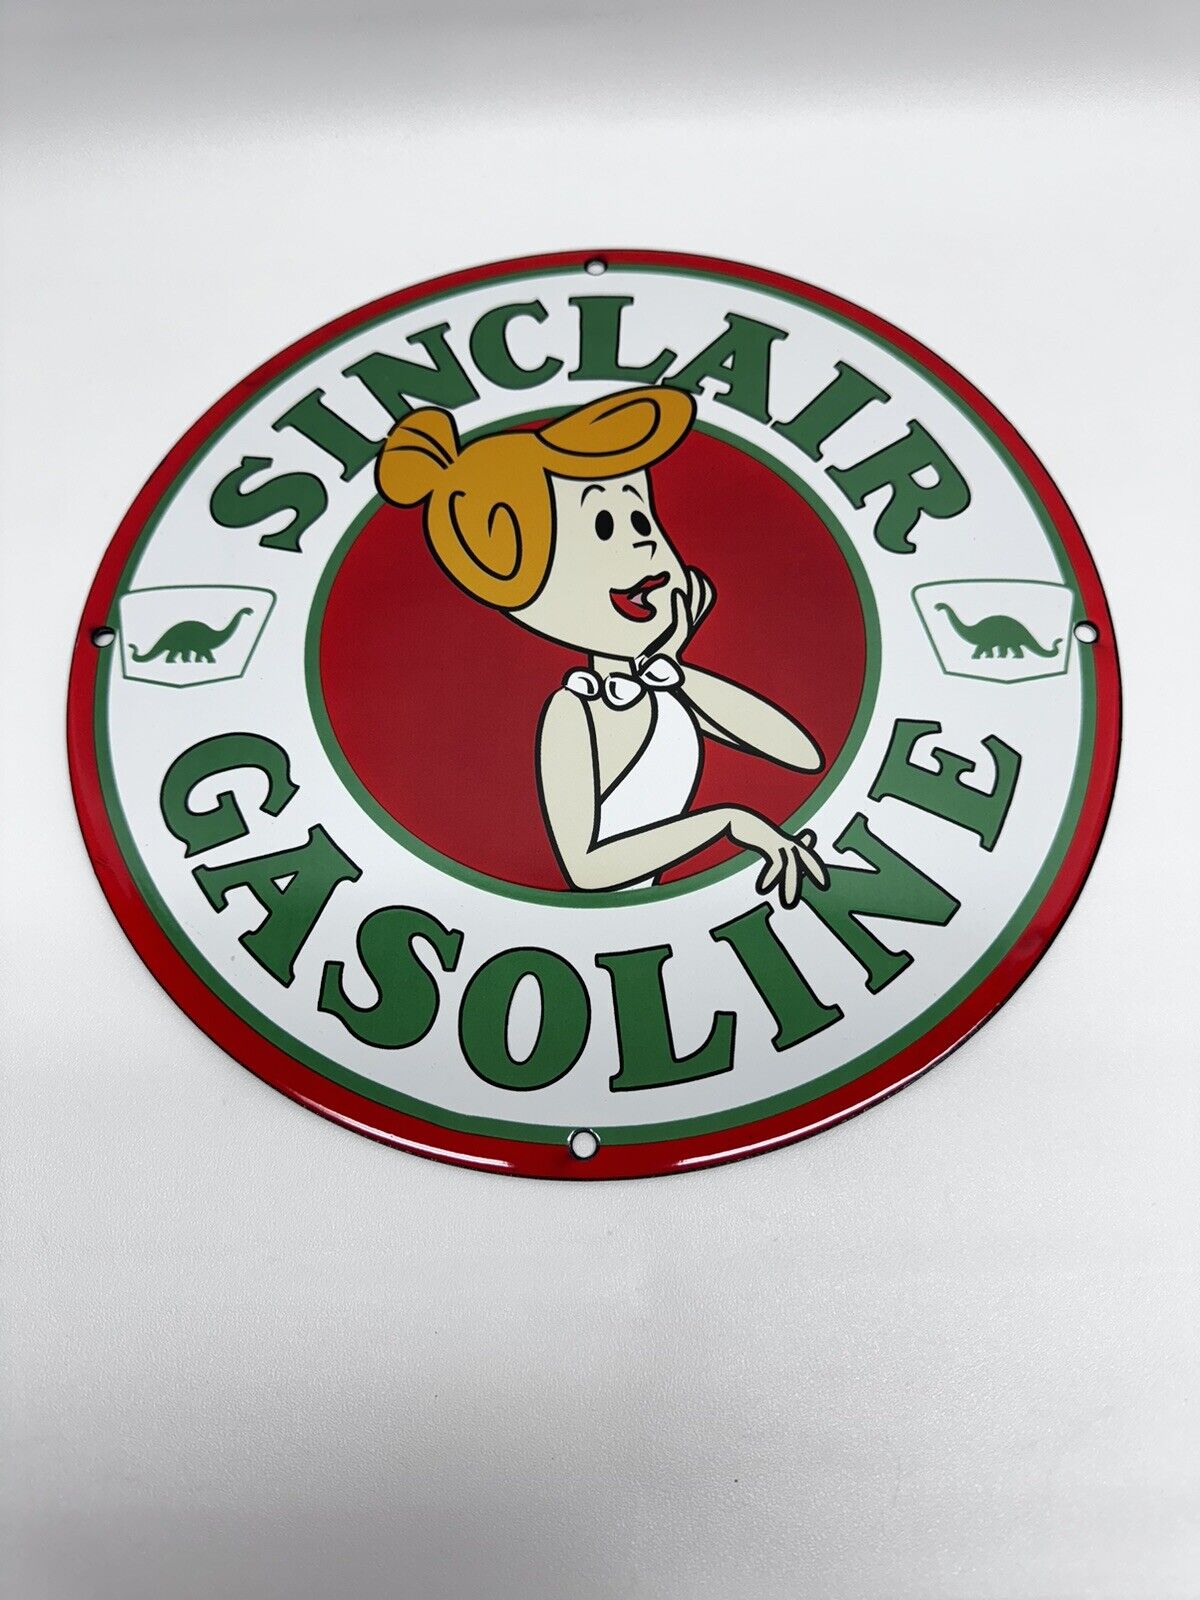 Sinclair Gasoline Vintage Style Porcelain Enamel Service Station Motor Oil Sign